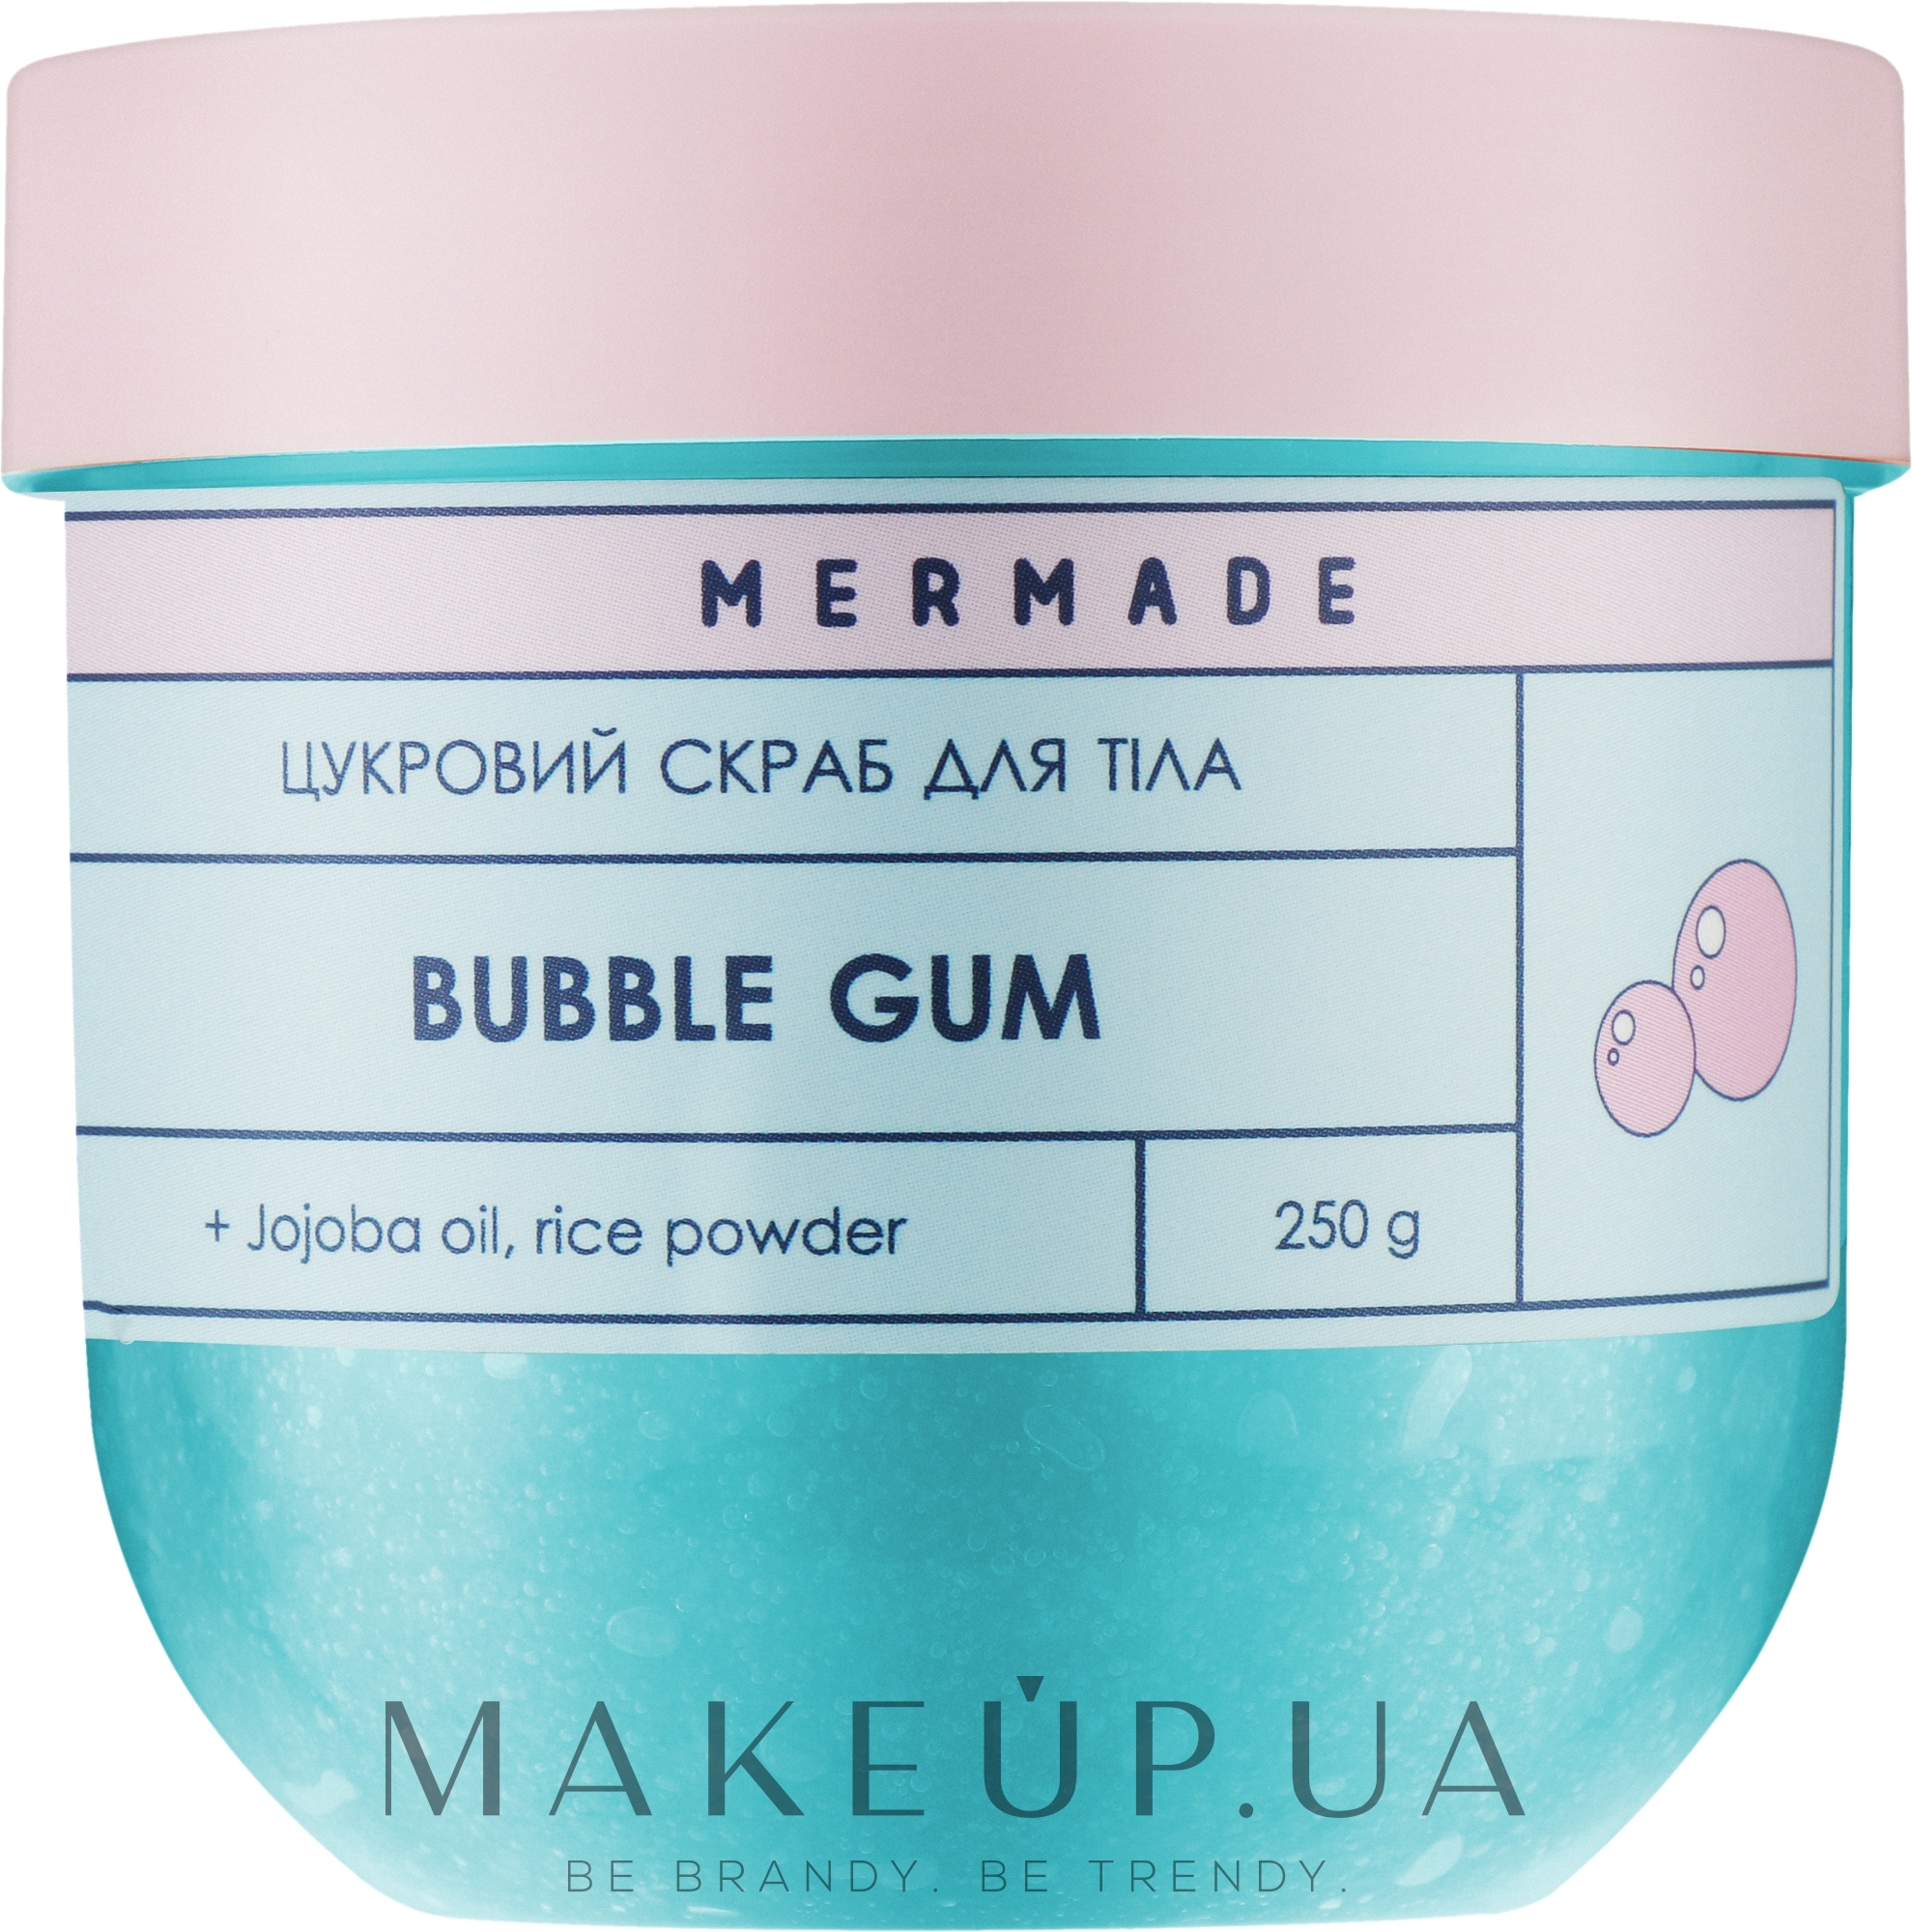 Сахарный скраб для тела - Mermade Bubble Gum  — фото 250g